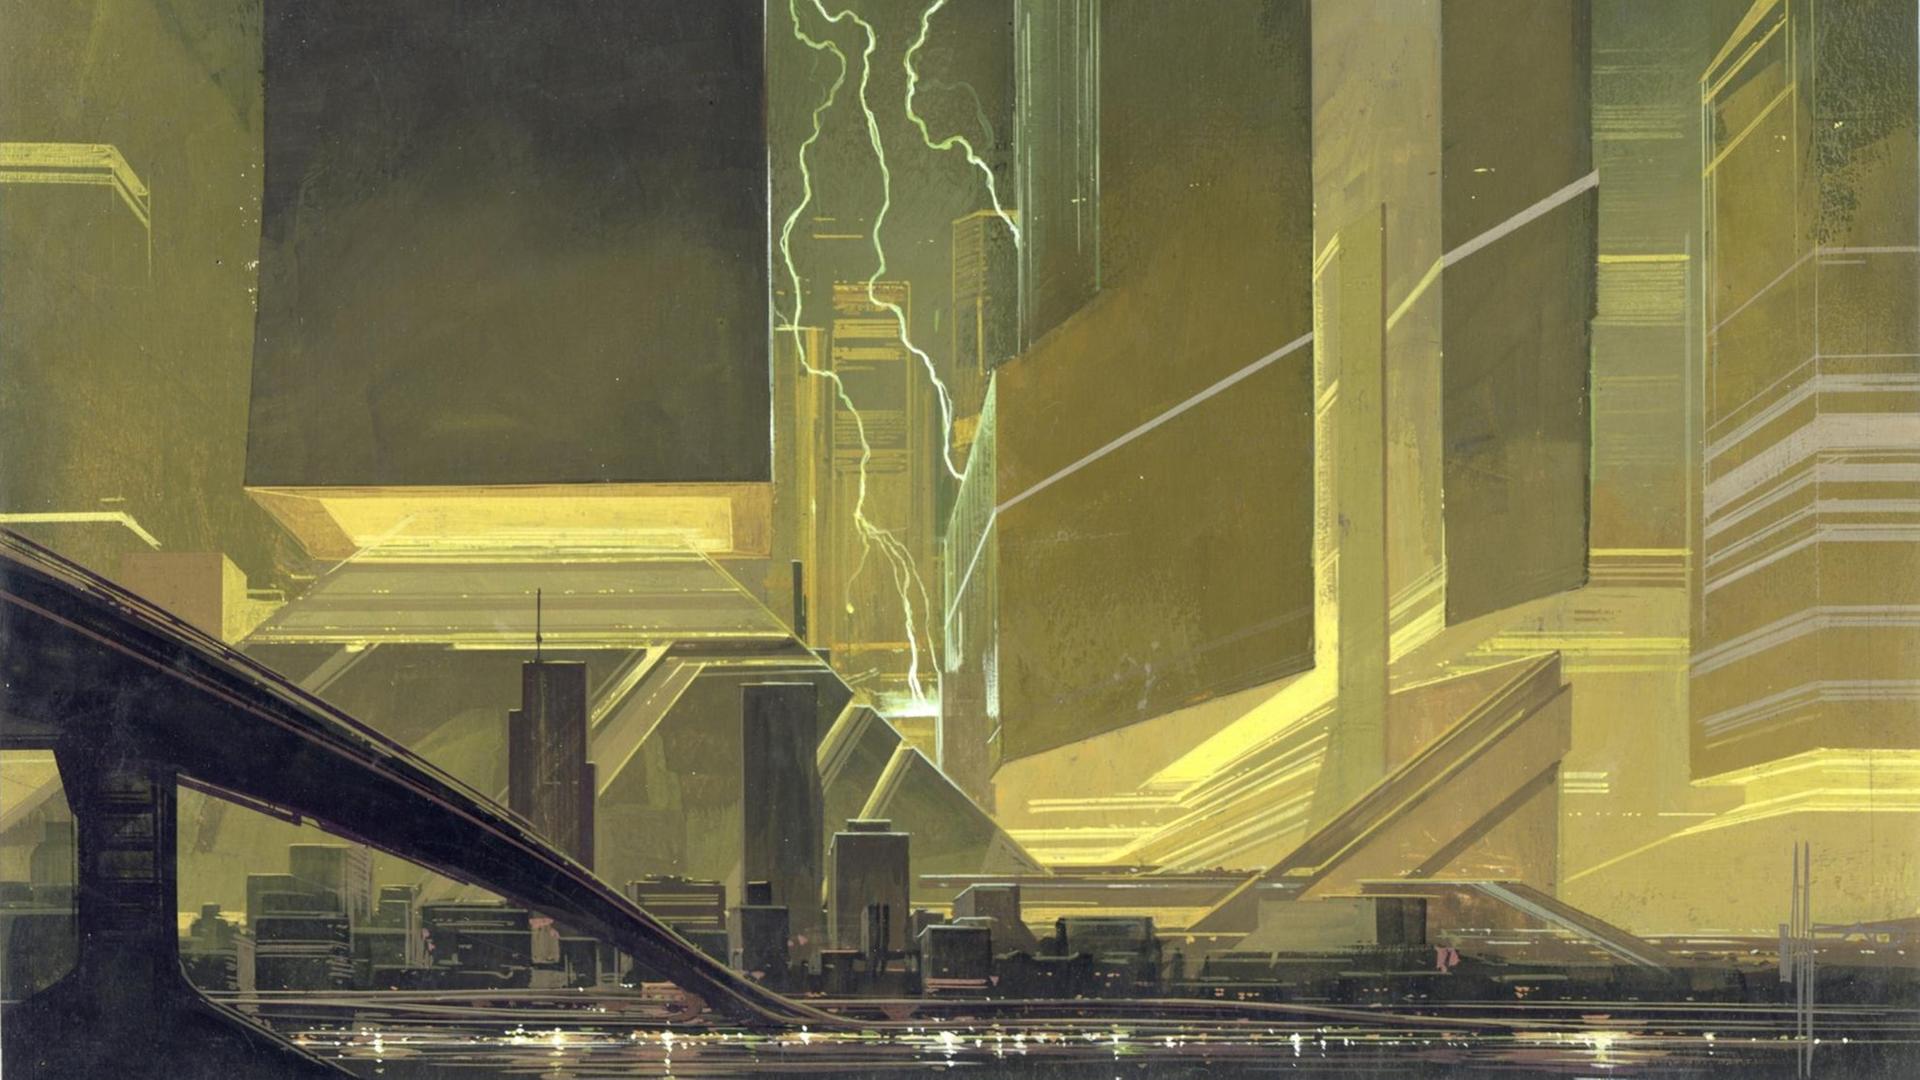 Darstellung einer futuristische Großstadt-Silhouette von Syd Mead.